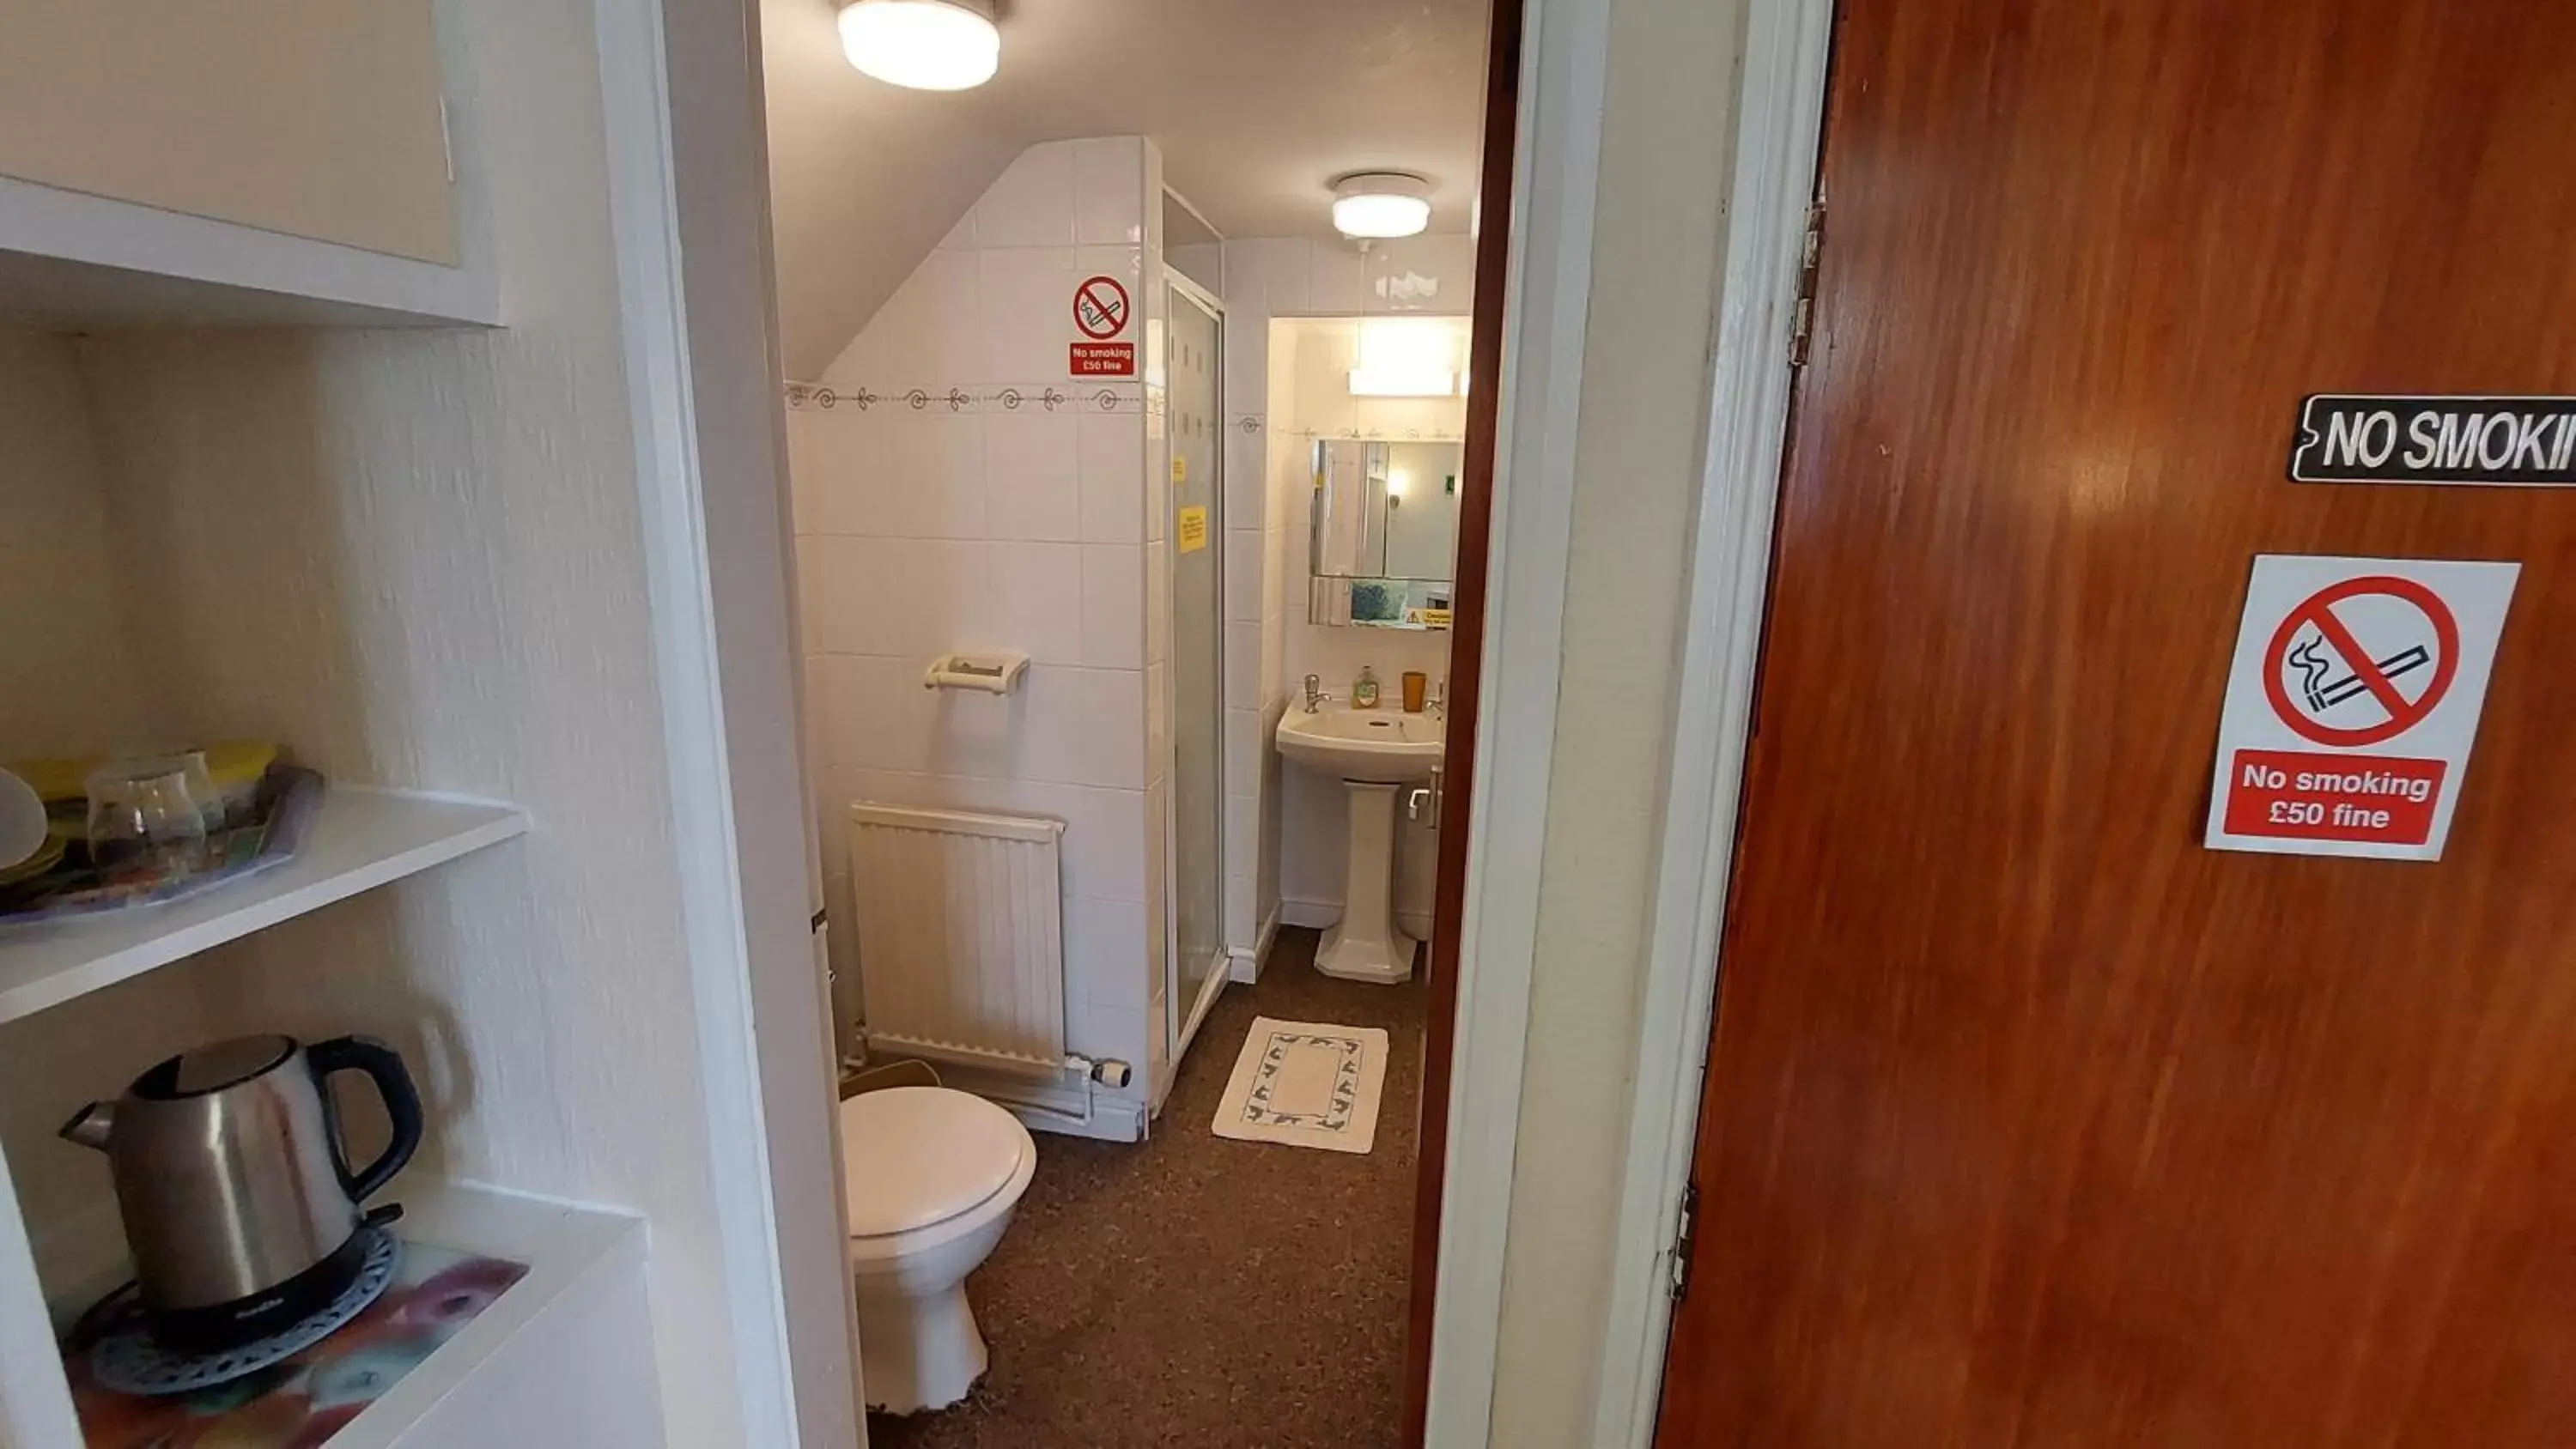 Bathroom in Tennyson Lodge